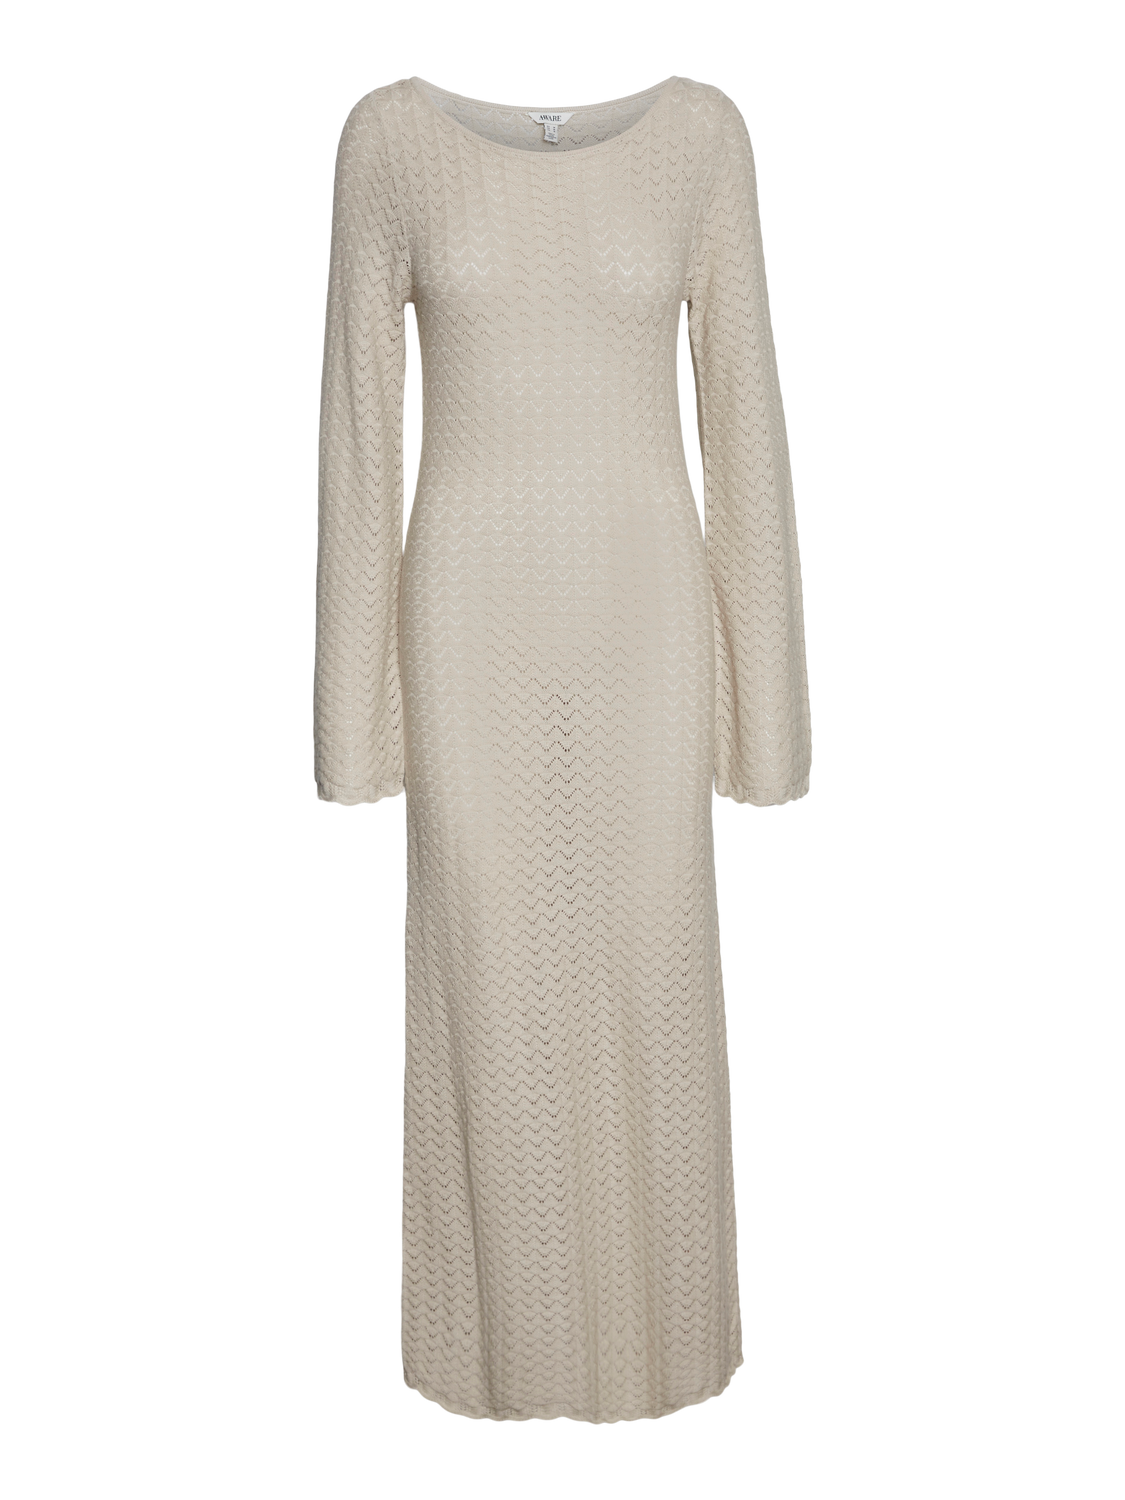 VMIBERIA Dress - Oatmeal